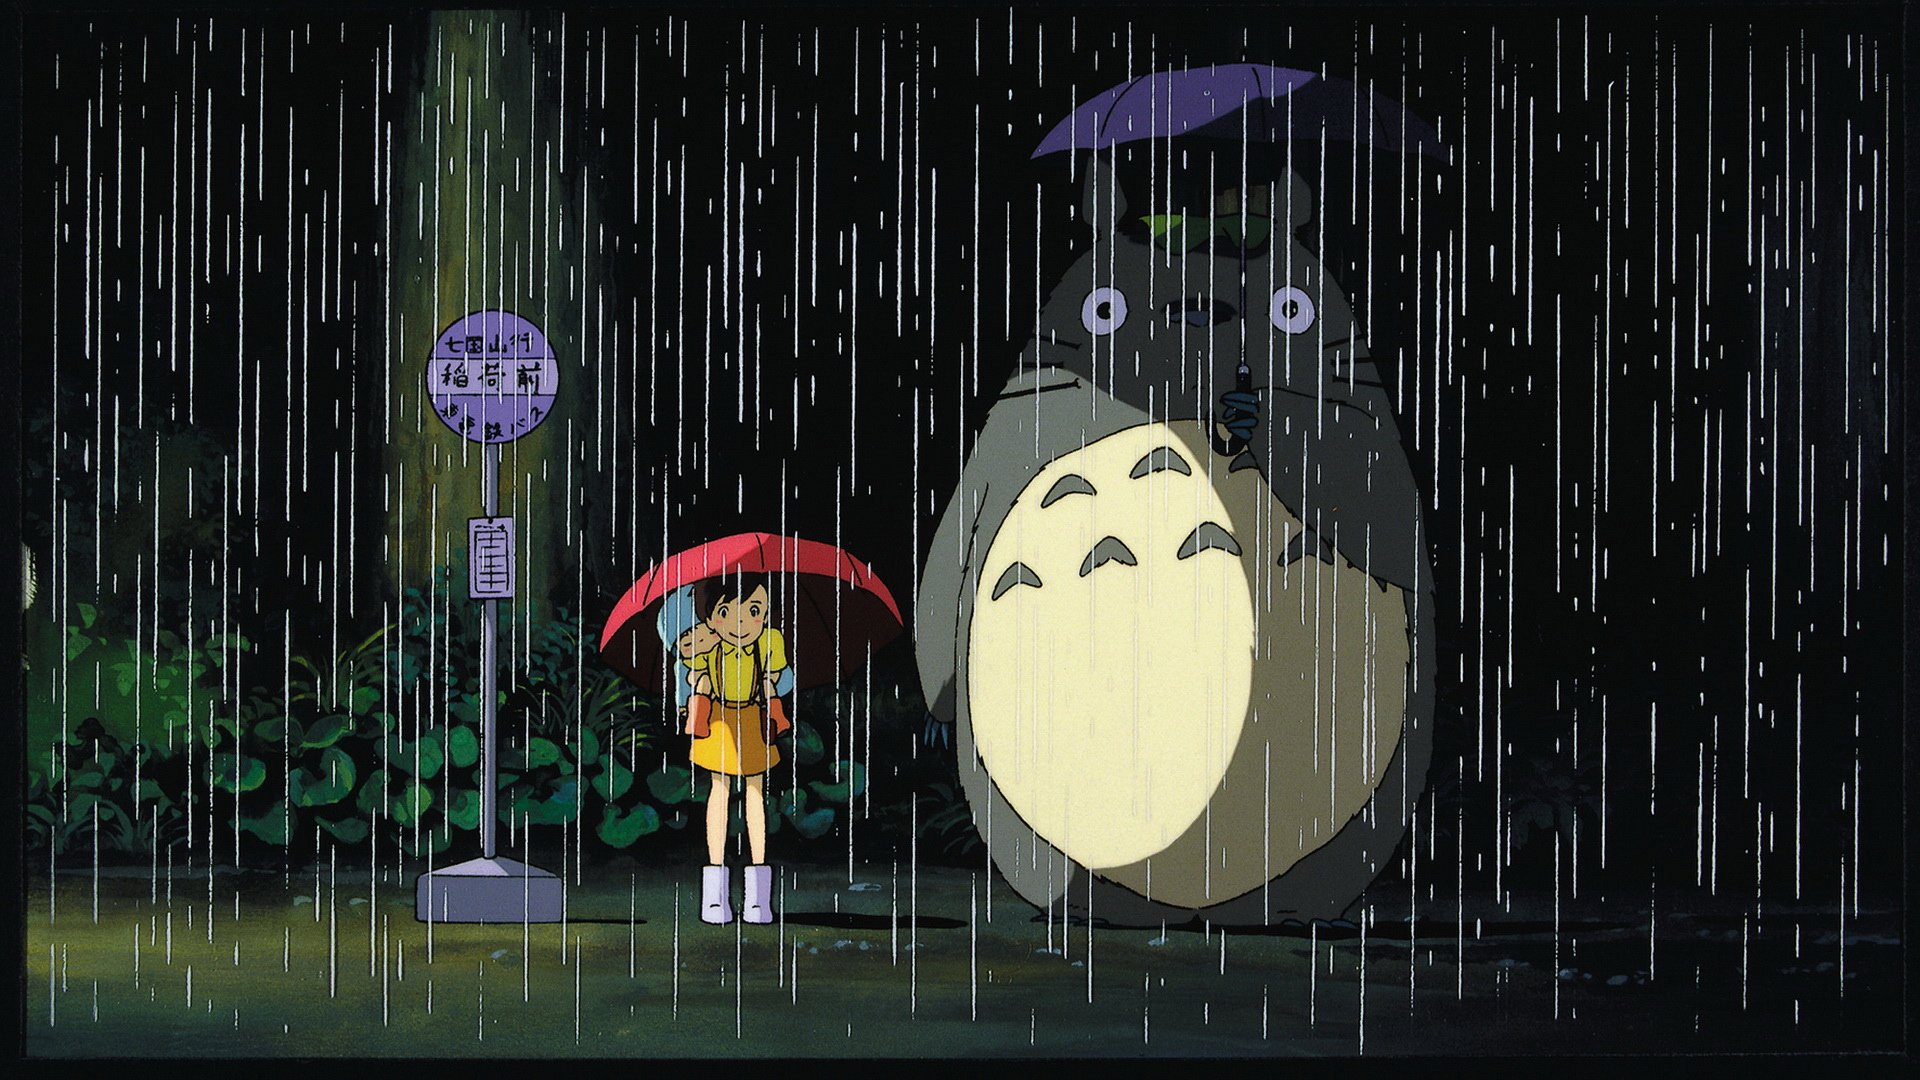 Nếu bạn là một fan hâm mộ của Studio Ghibli, đừng bỏ lỡ cơ hội xem hình nền HD này! Hình ảnh tươi sáng và tinh tế này sẽ đưa bạn đến thế giới của những câu chuyện tuyệt vời nhất của Studio Ghibli. Hãy là người đầu tiên sở hữu bức hình nền này và cùng nhau tận hưởng những trải nghiệm tuyệt vời!